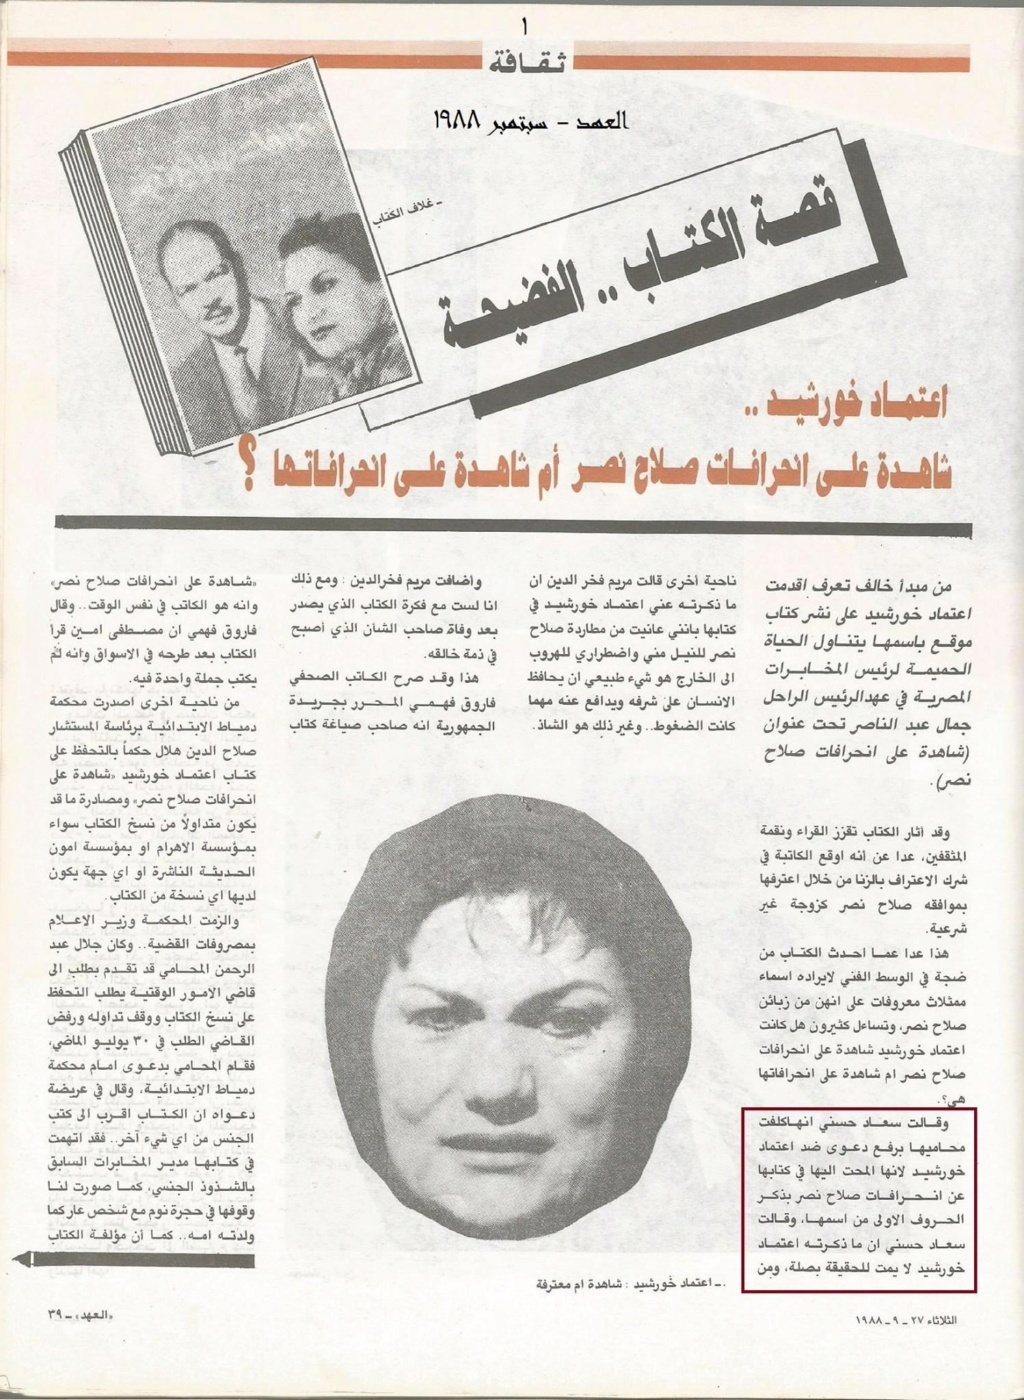 1988 - مقال صحفي : سعاد حسني ترفع دعوى ضد اعتماد خورشيد 1988 م 1227